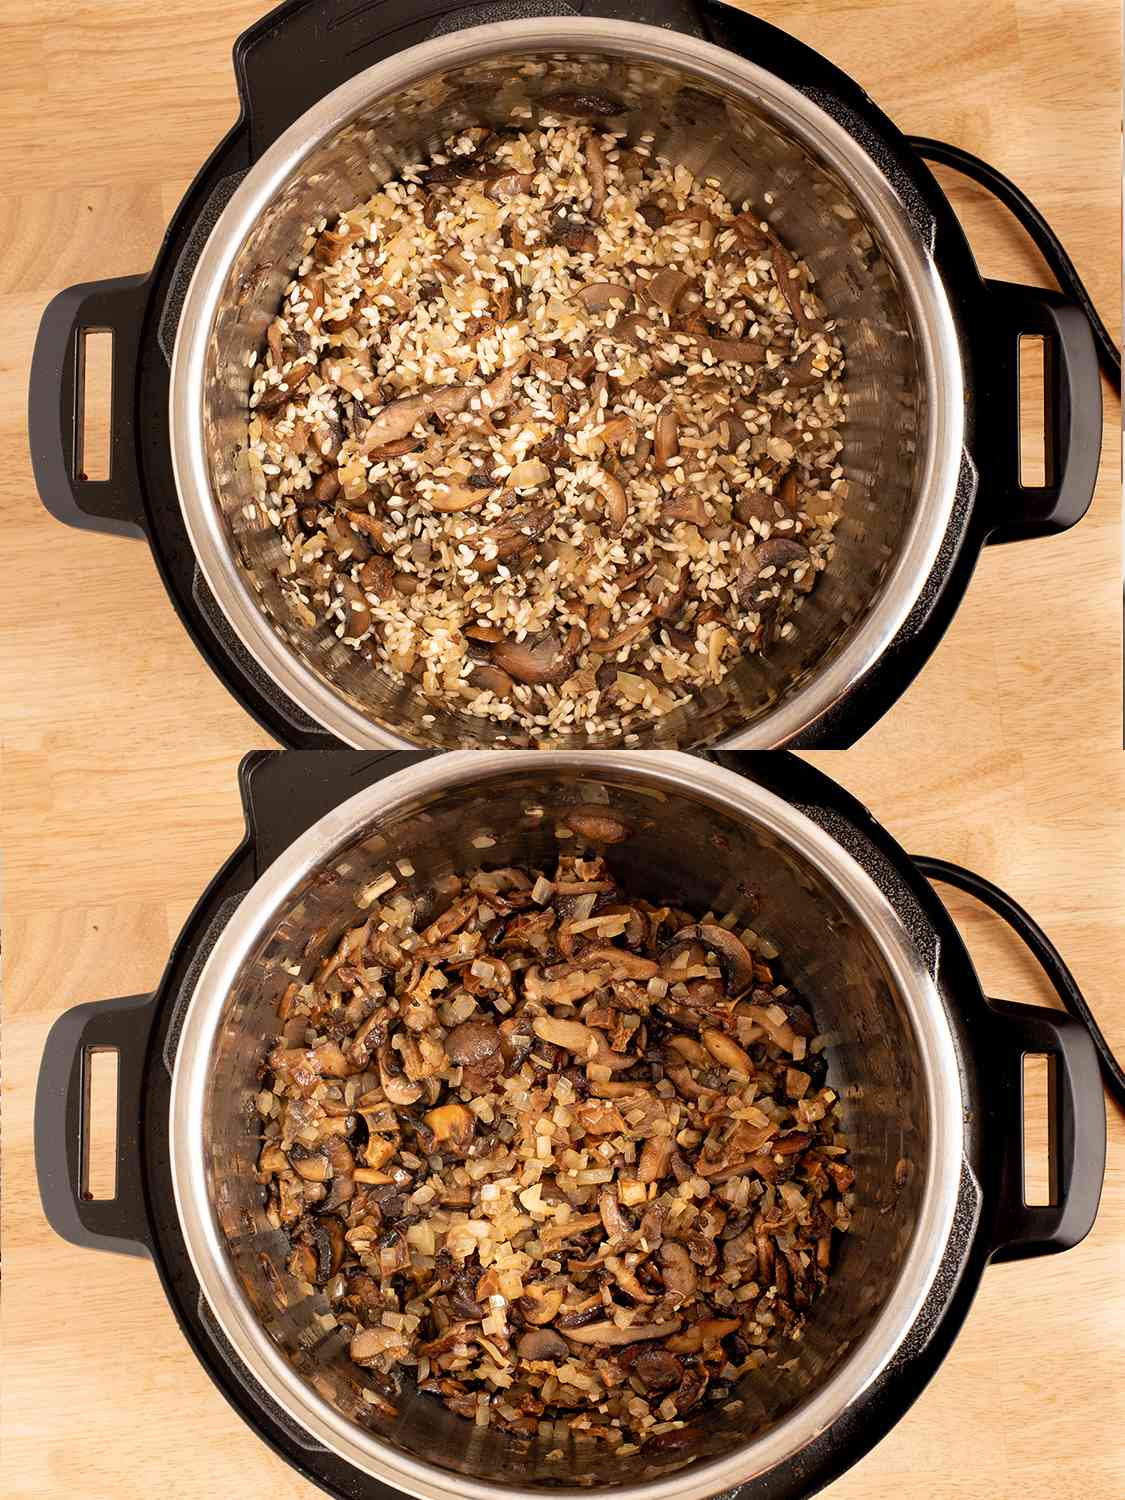 两幅拼贴画显示了米饭和sautÃ©d洋葱之后的高压锅。